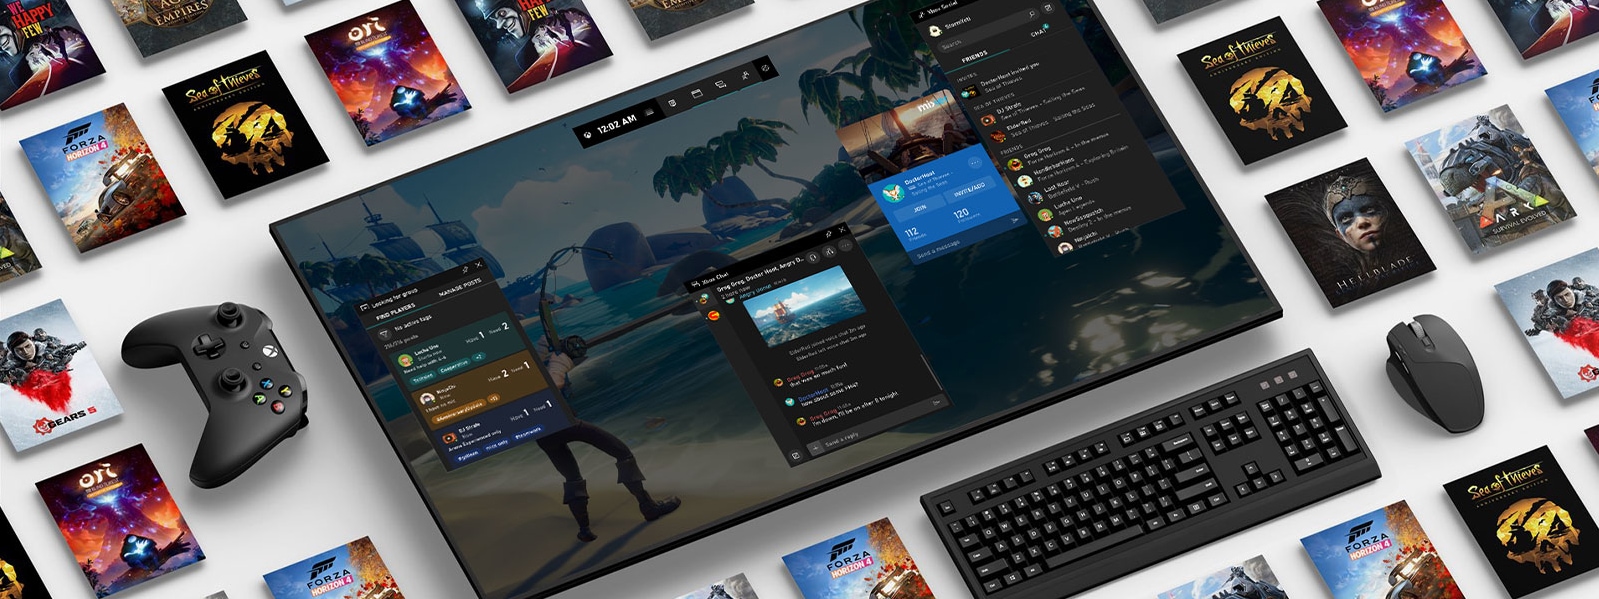 Viaceré herné tituly pre Windows 10 a Xbox na digitálnej obrazovke s klávesnicou, myšou a ovládačom 